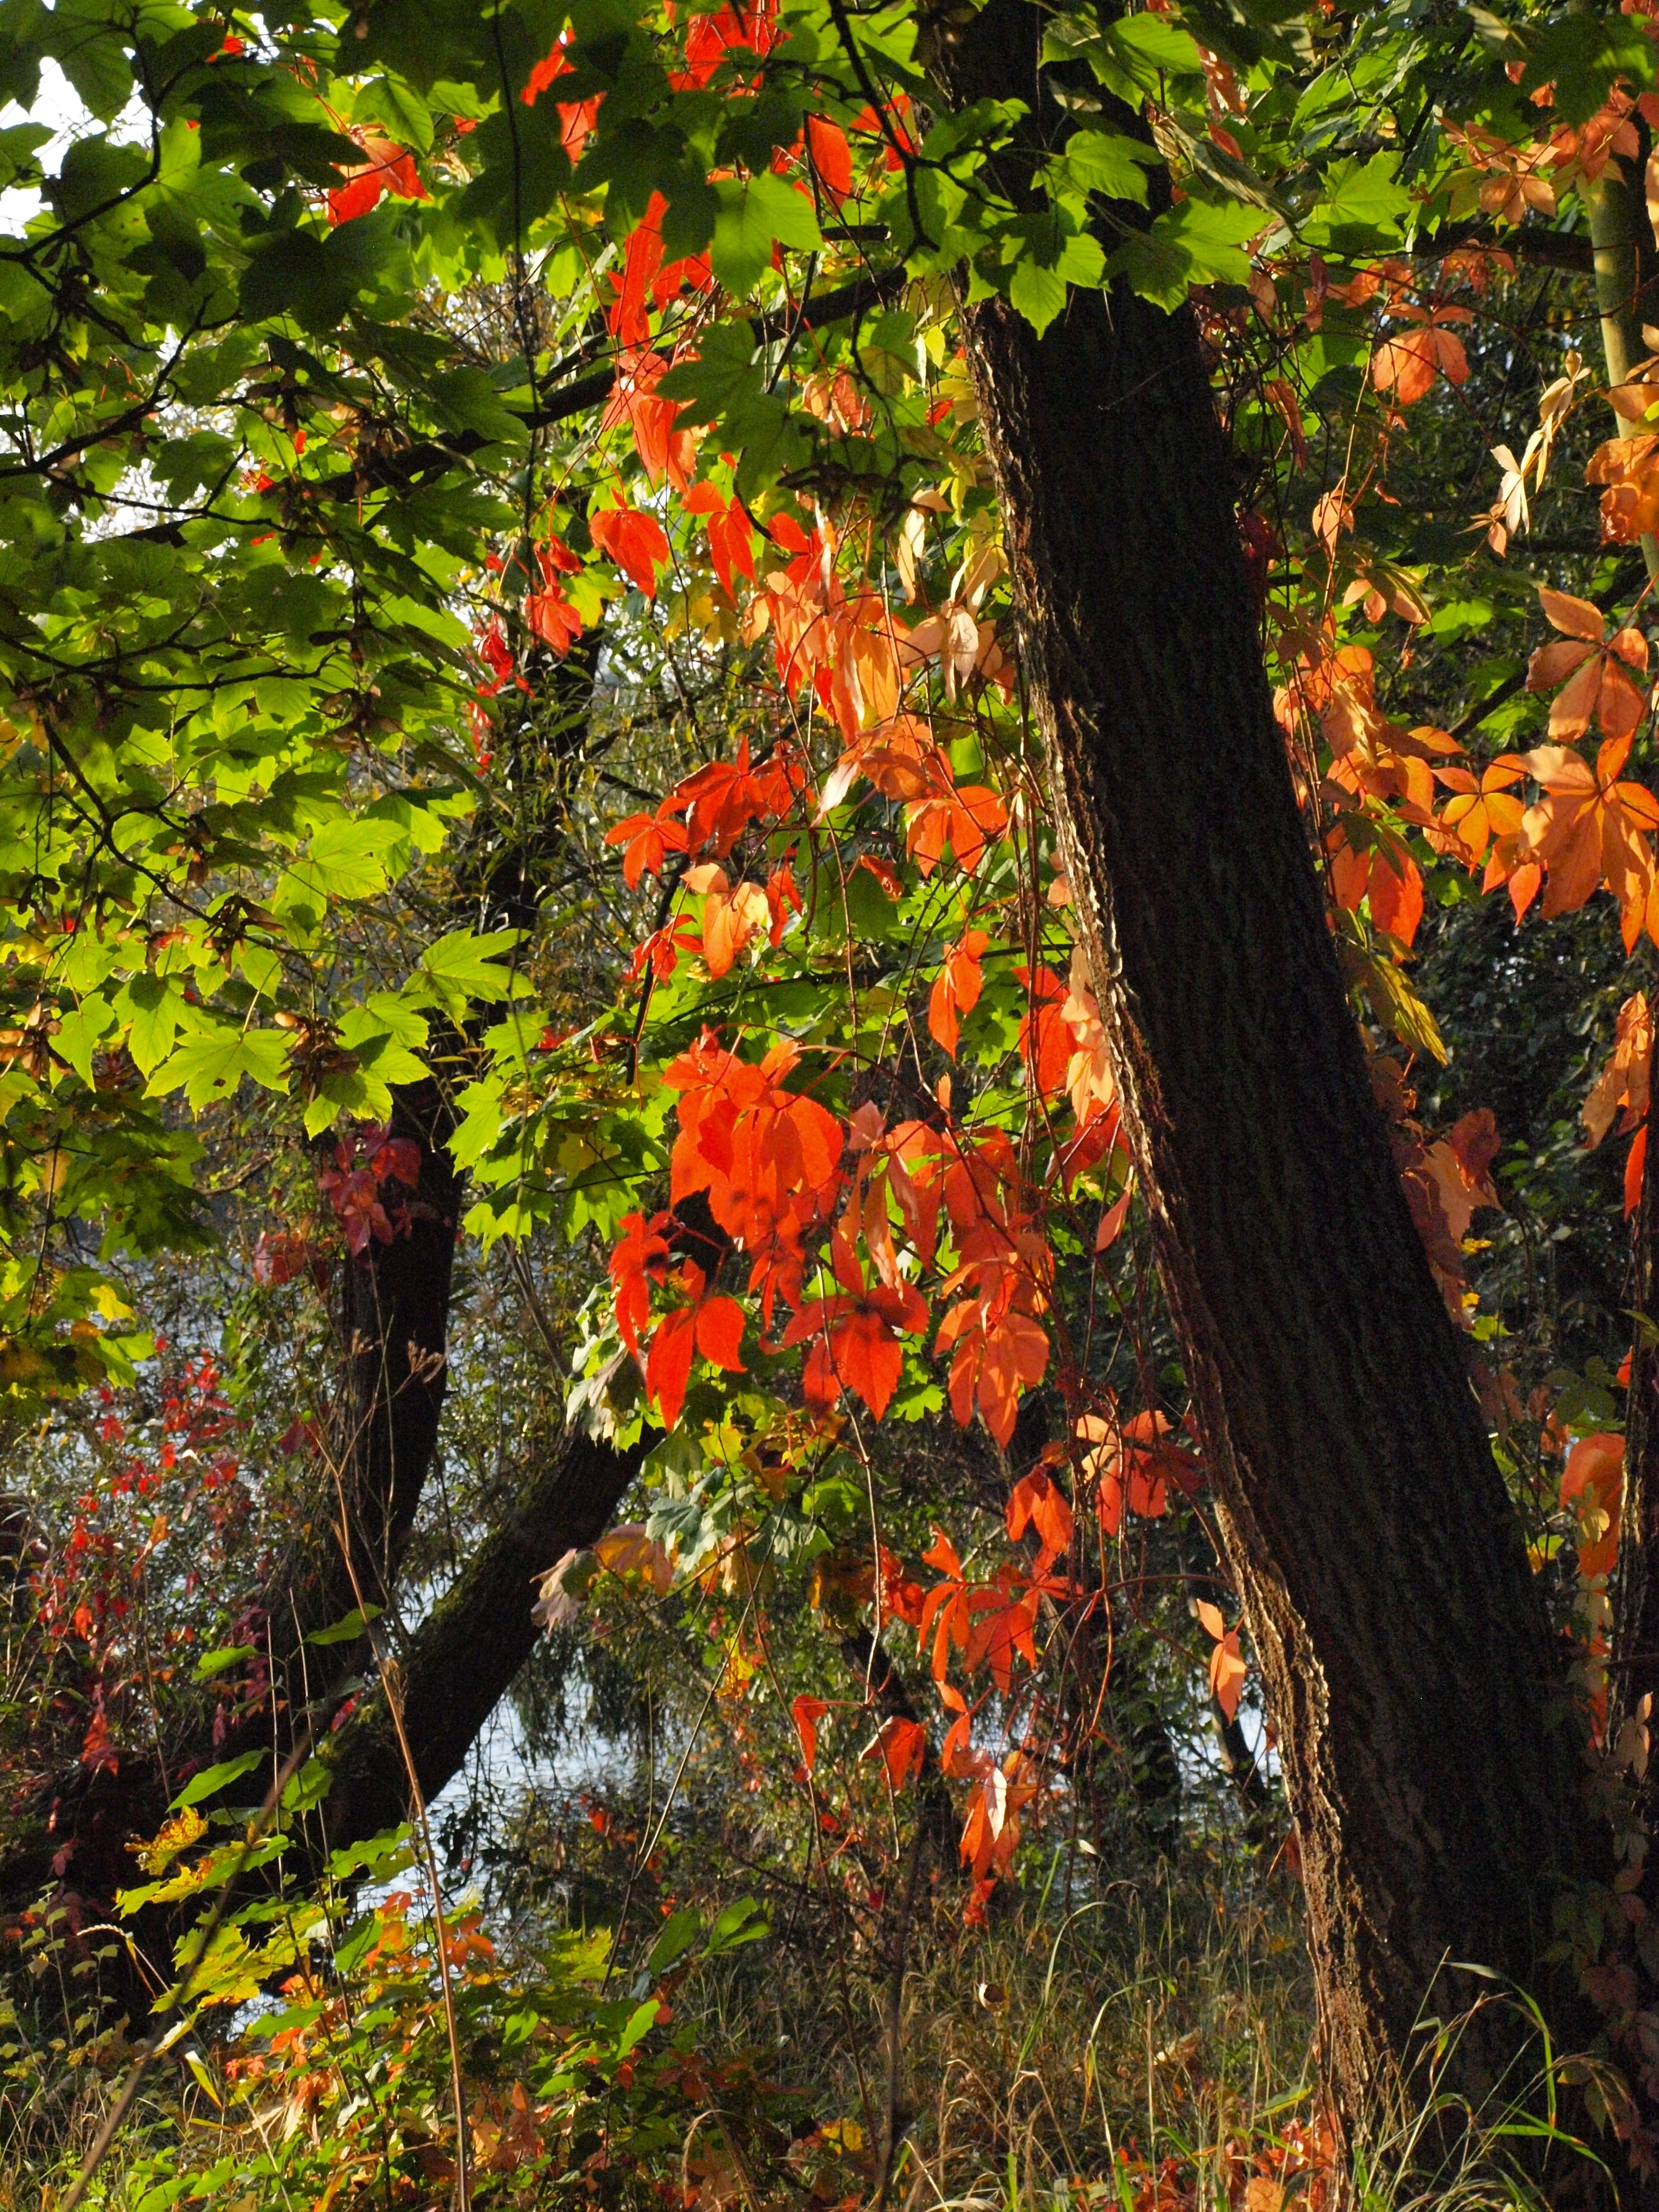 trees during autumn season